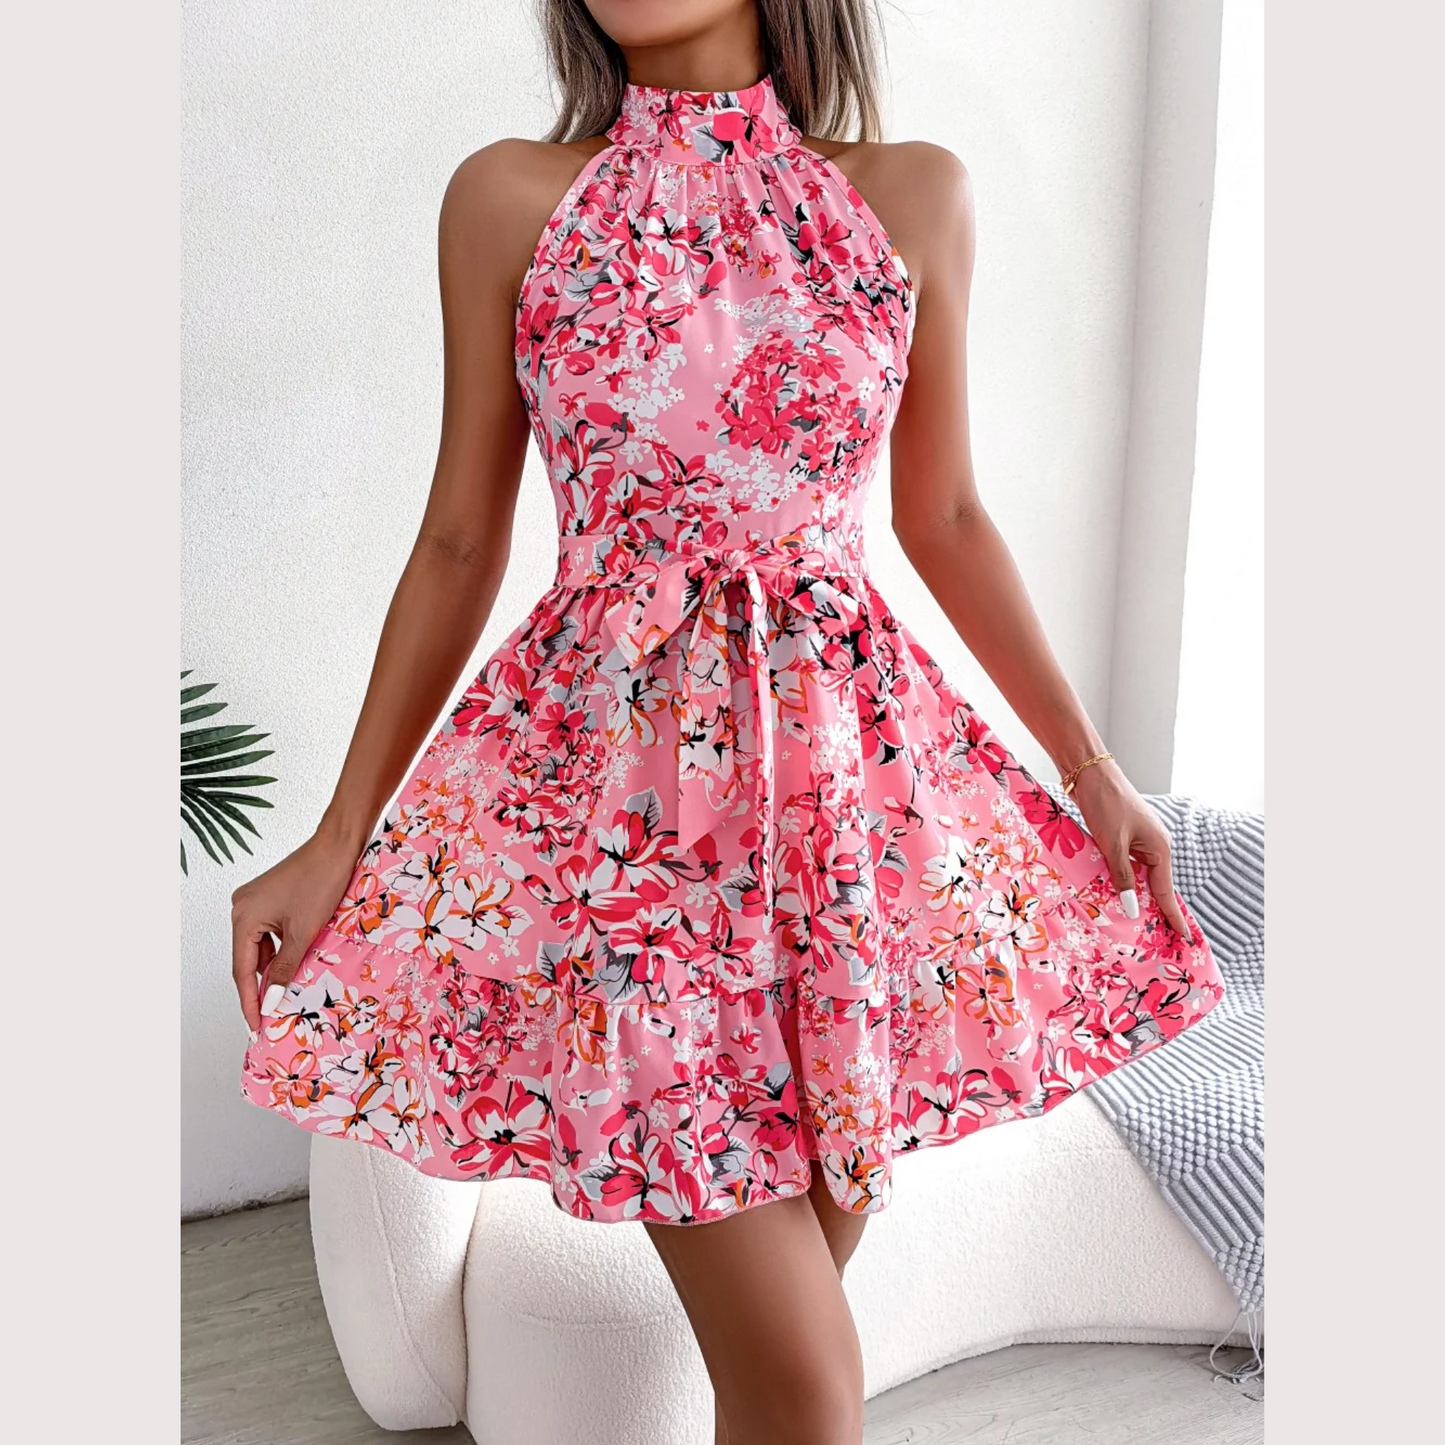 Ladonna - Pink Floral Halter Neck A-Line Dress